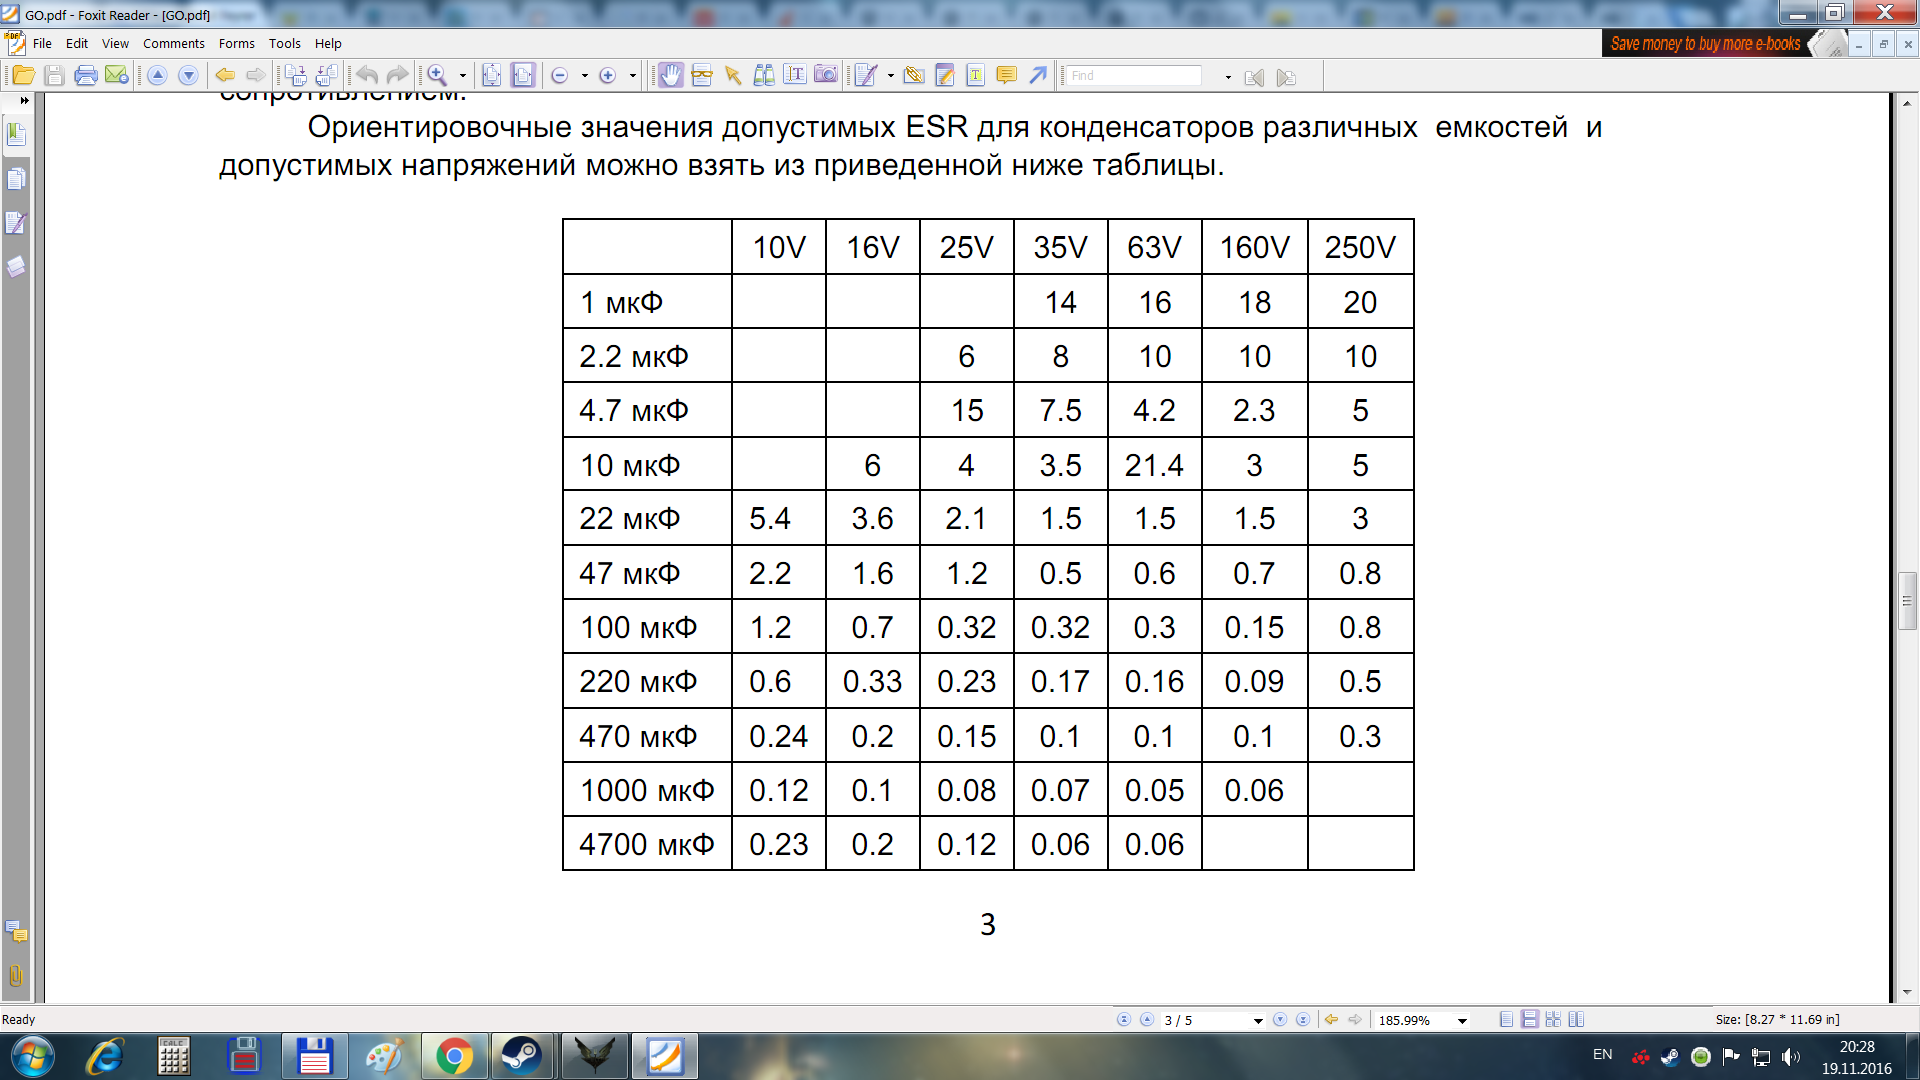 Таблица значений ESR конденсаторов